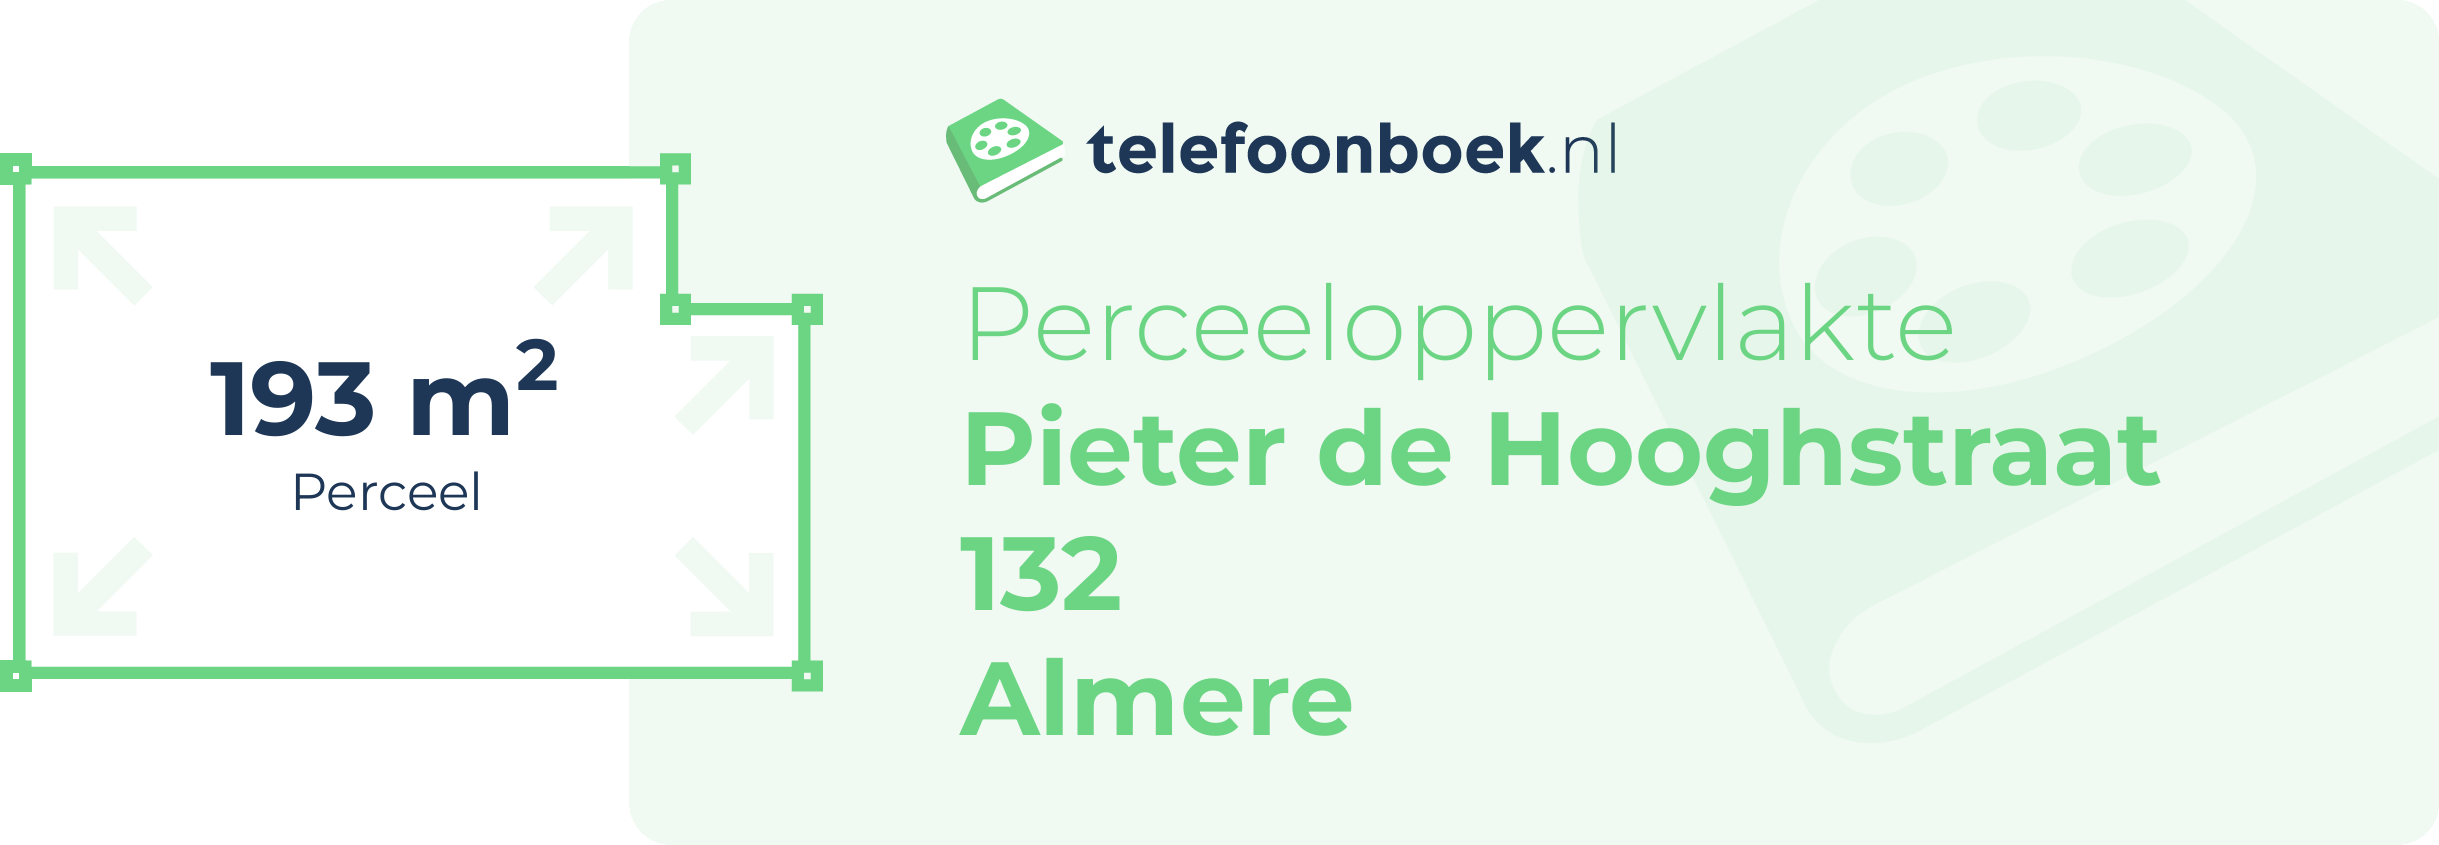 Perceeloppervlakte Pieter De Hooghstraat 132 Almere